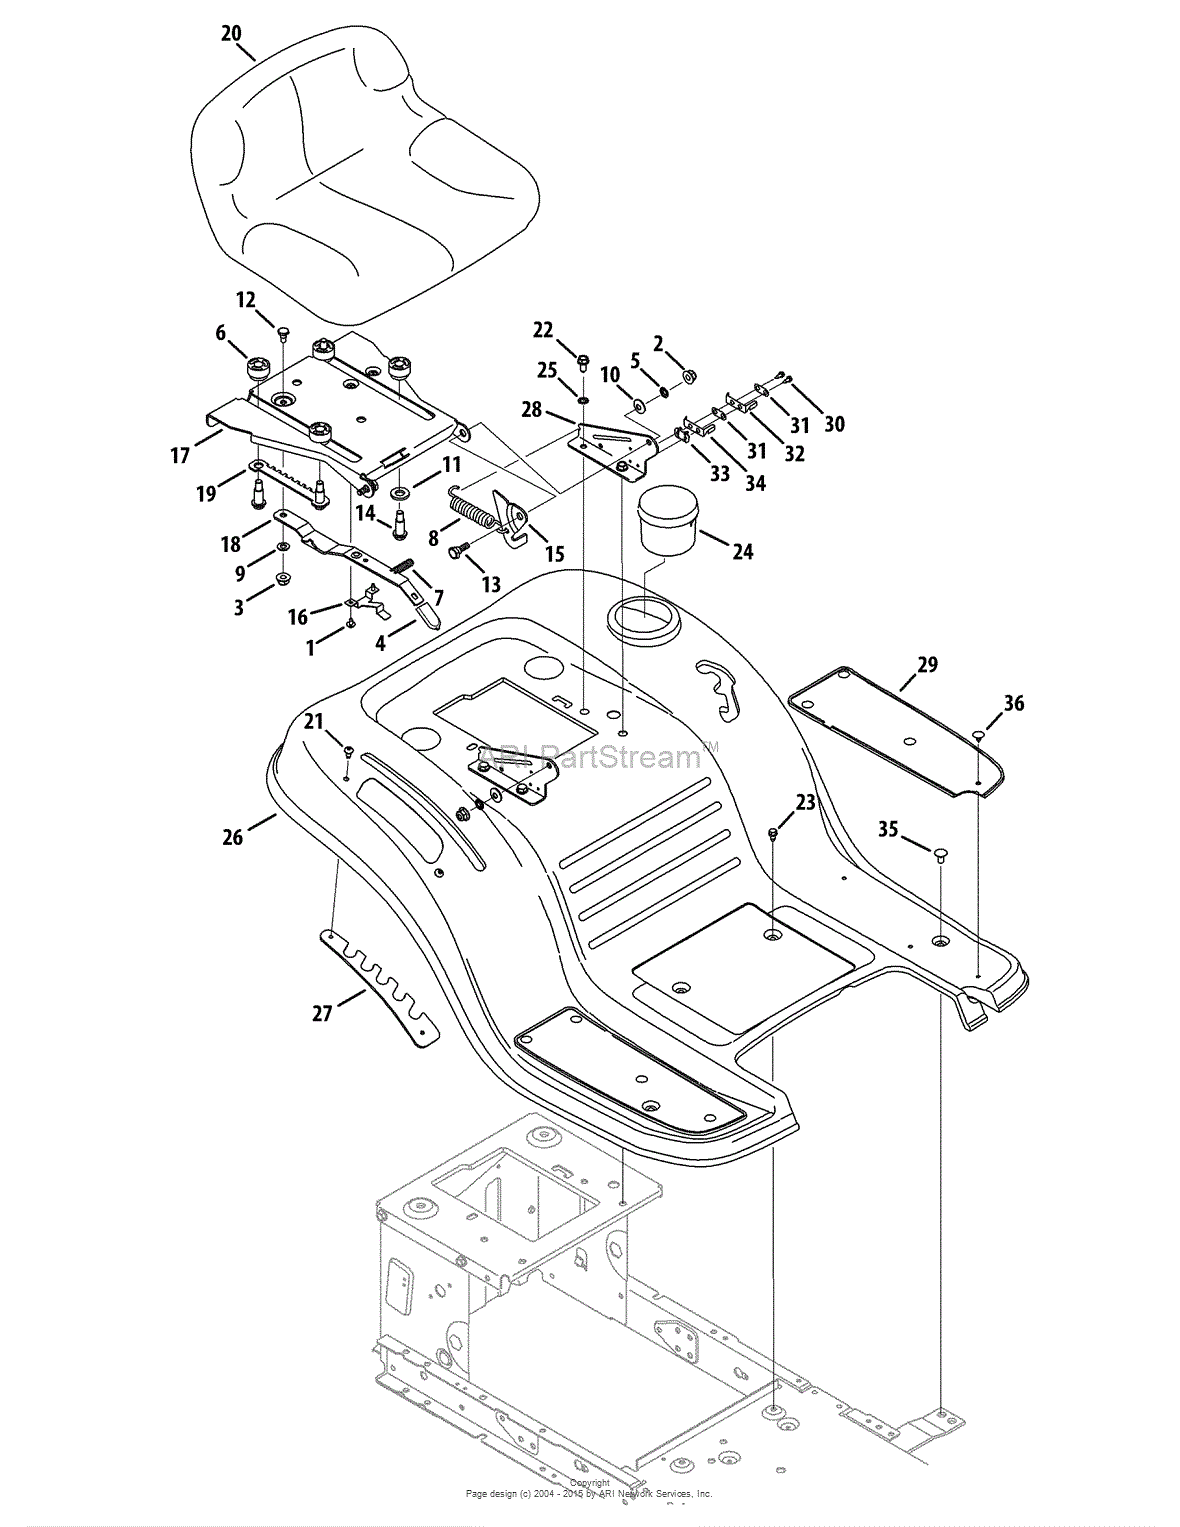 Craftsman Lt2000 Wiring Schematic - Wiring Diagram